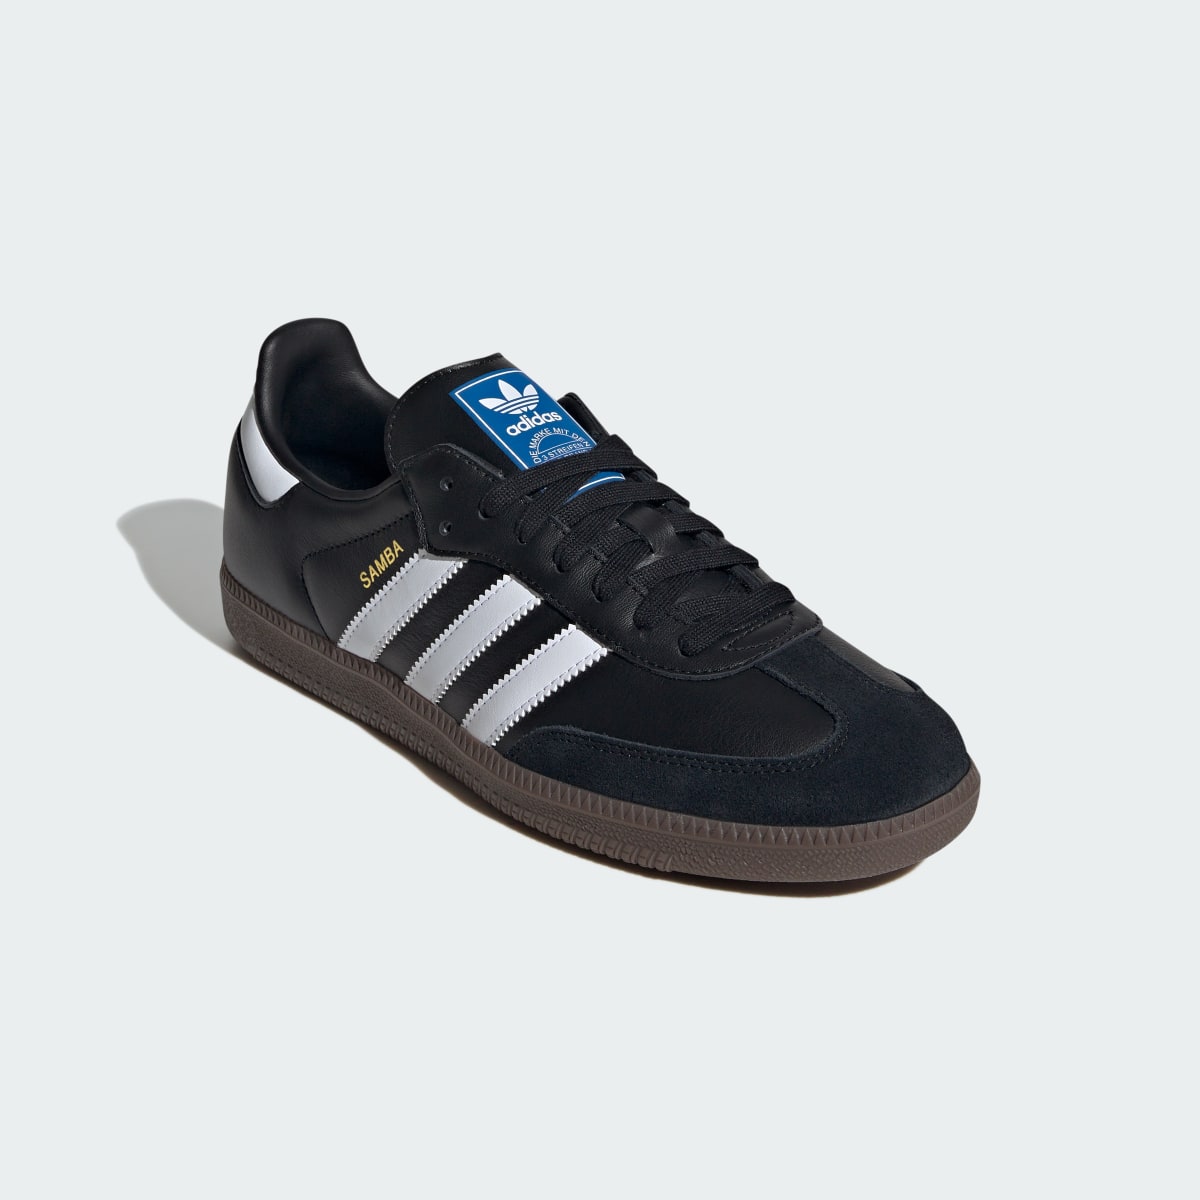 Adidas Samba OG Shoes. 7